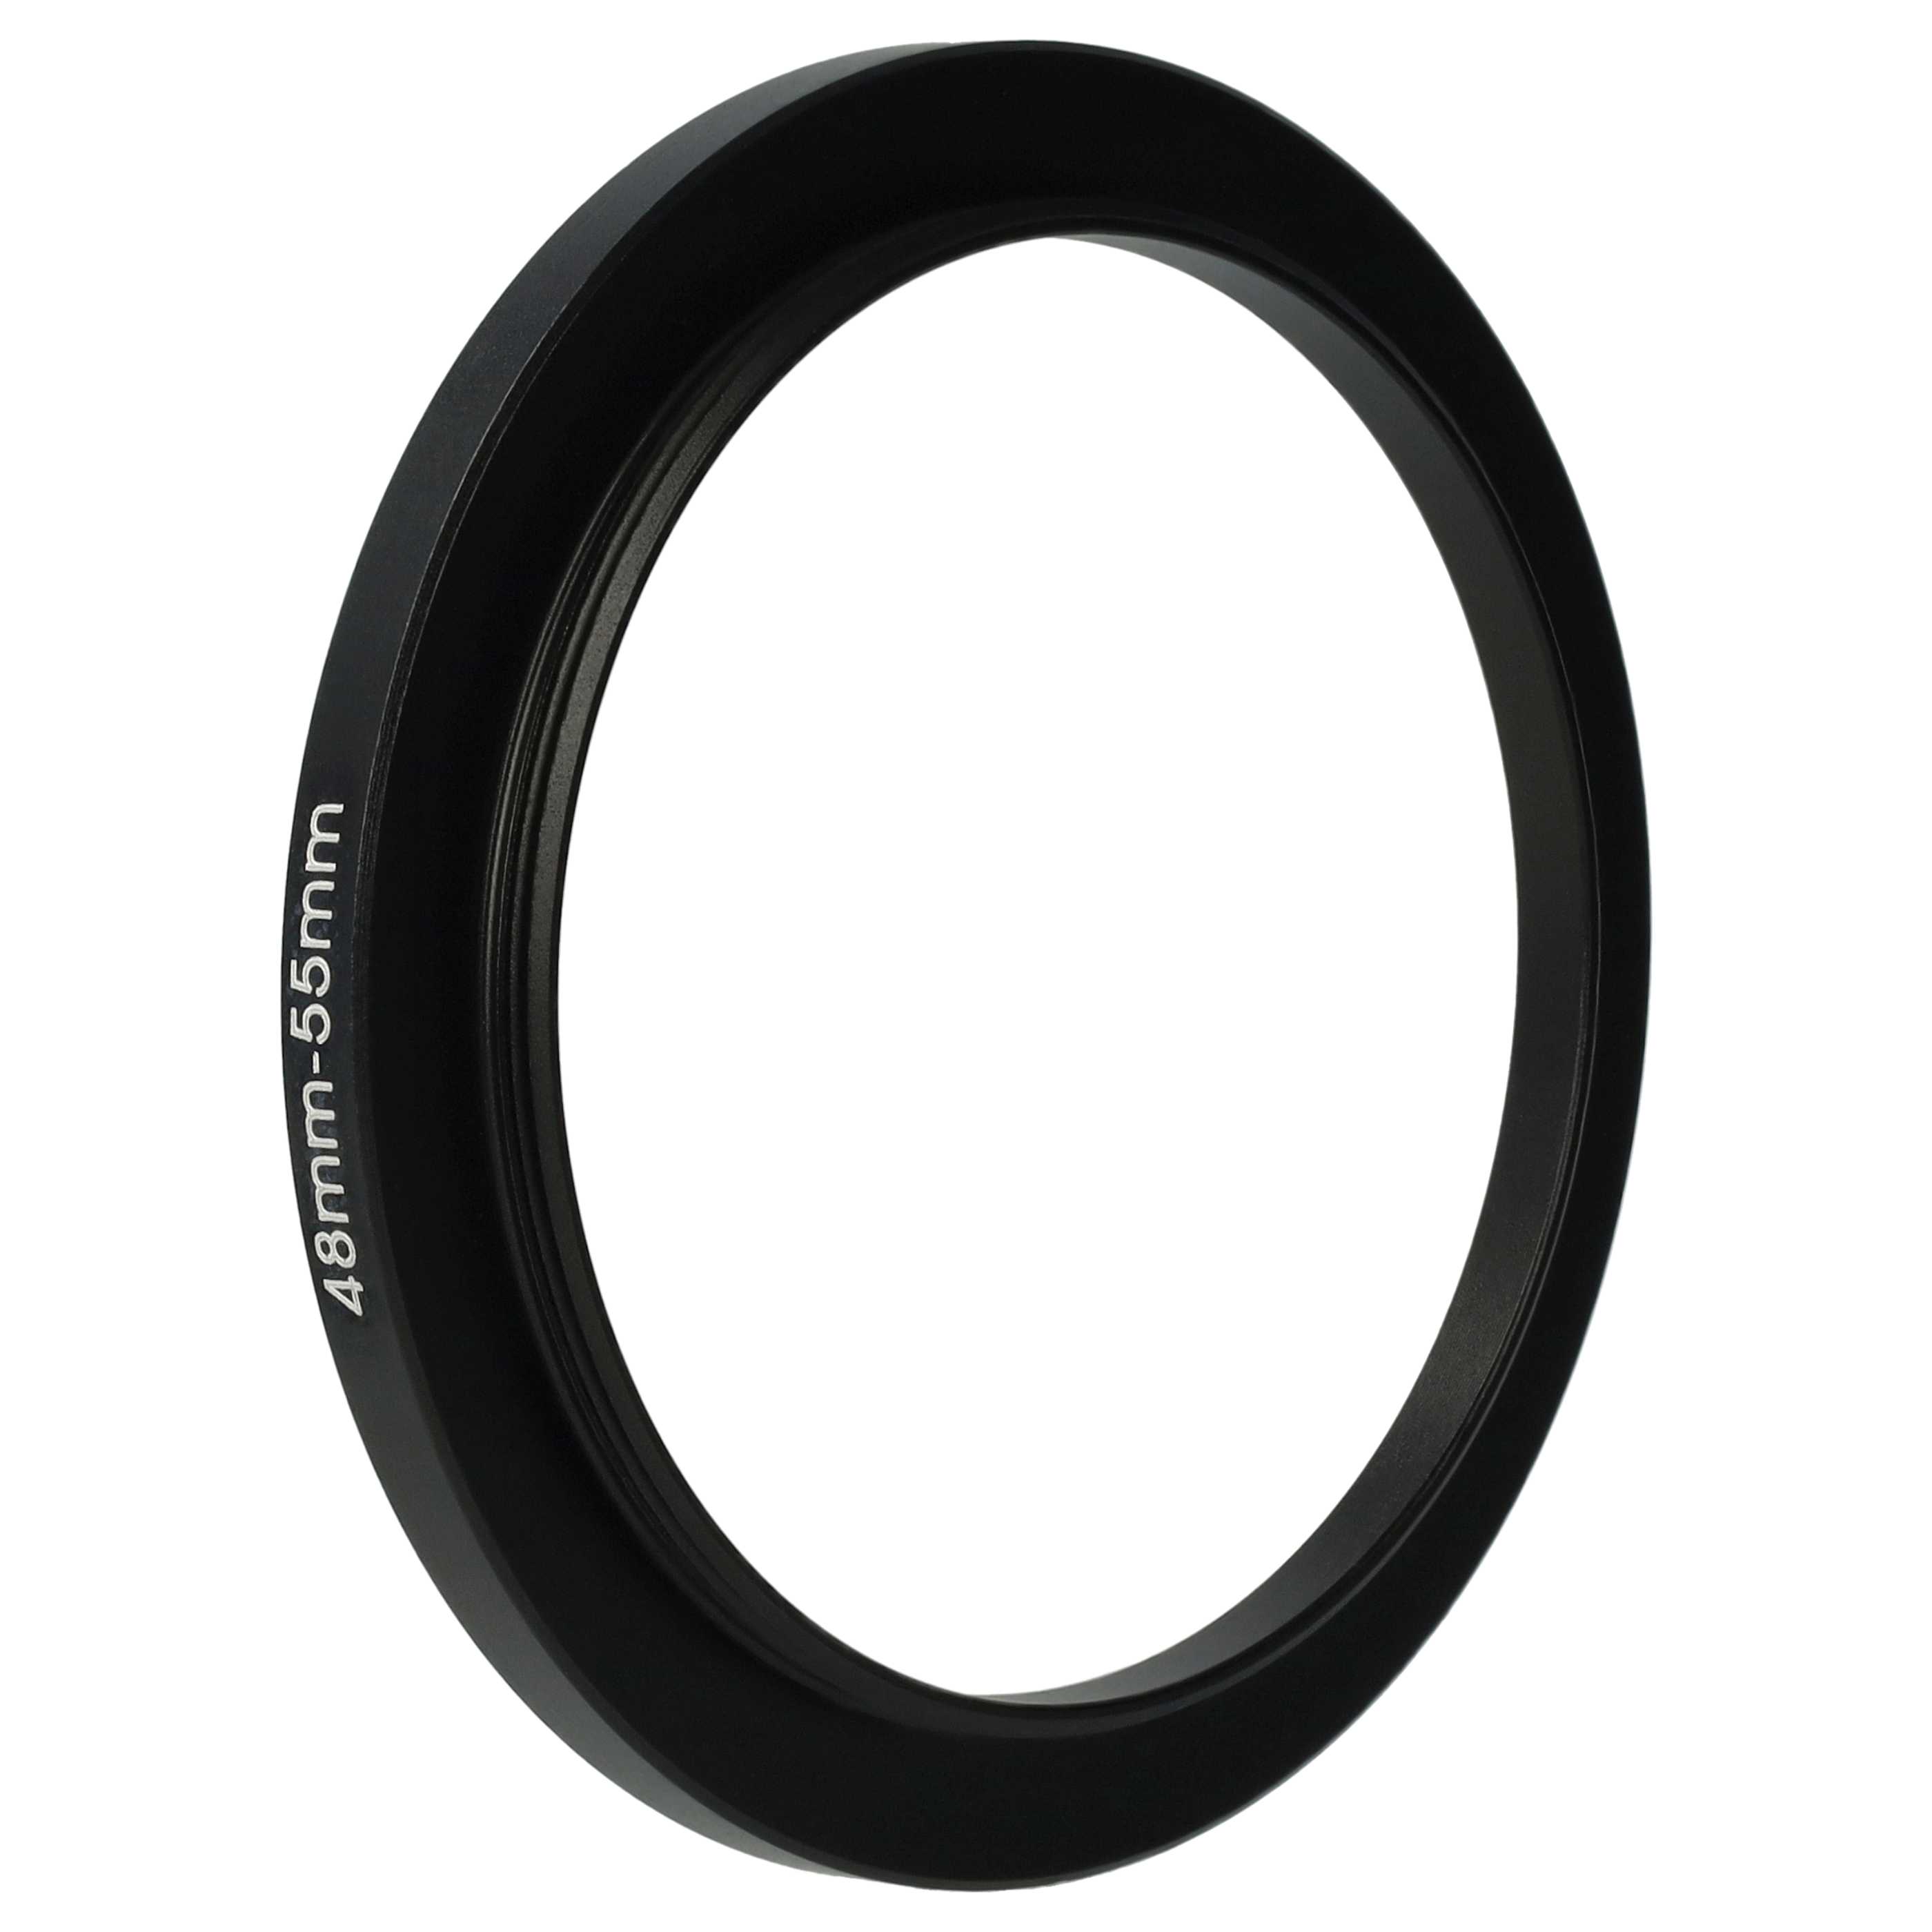 Step-Up-Ring Adapter 48 mm auf 55 mm passend für diverse Kamera-Objektive - Filteradapter